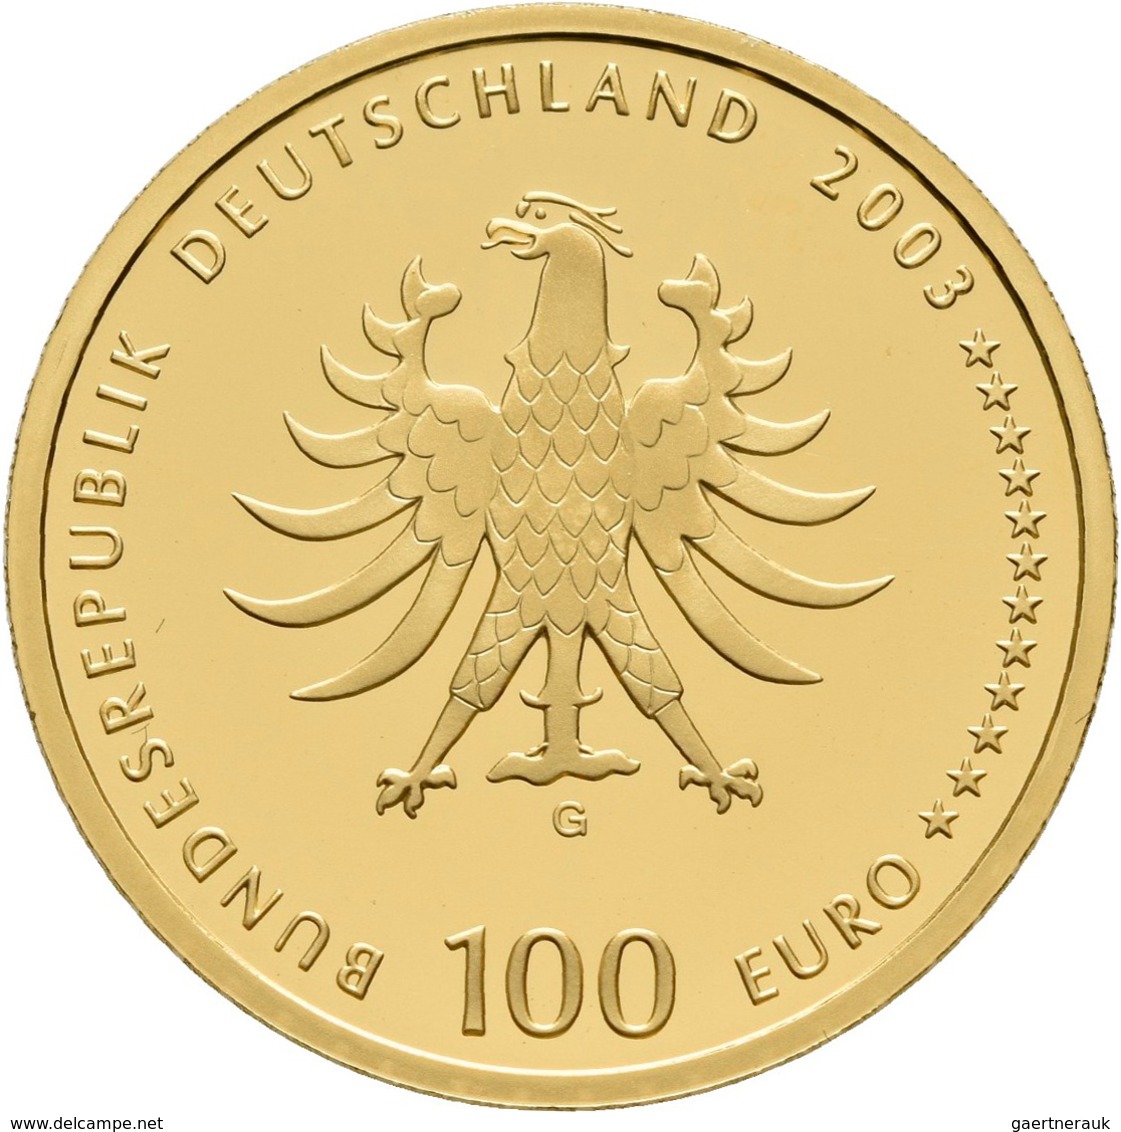 Deutschland - Anlagegold: 5 x 100 Euro 2003 Quedlinburg (A,D,F,G,J), in Originalkapsel und Etui, mit